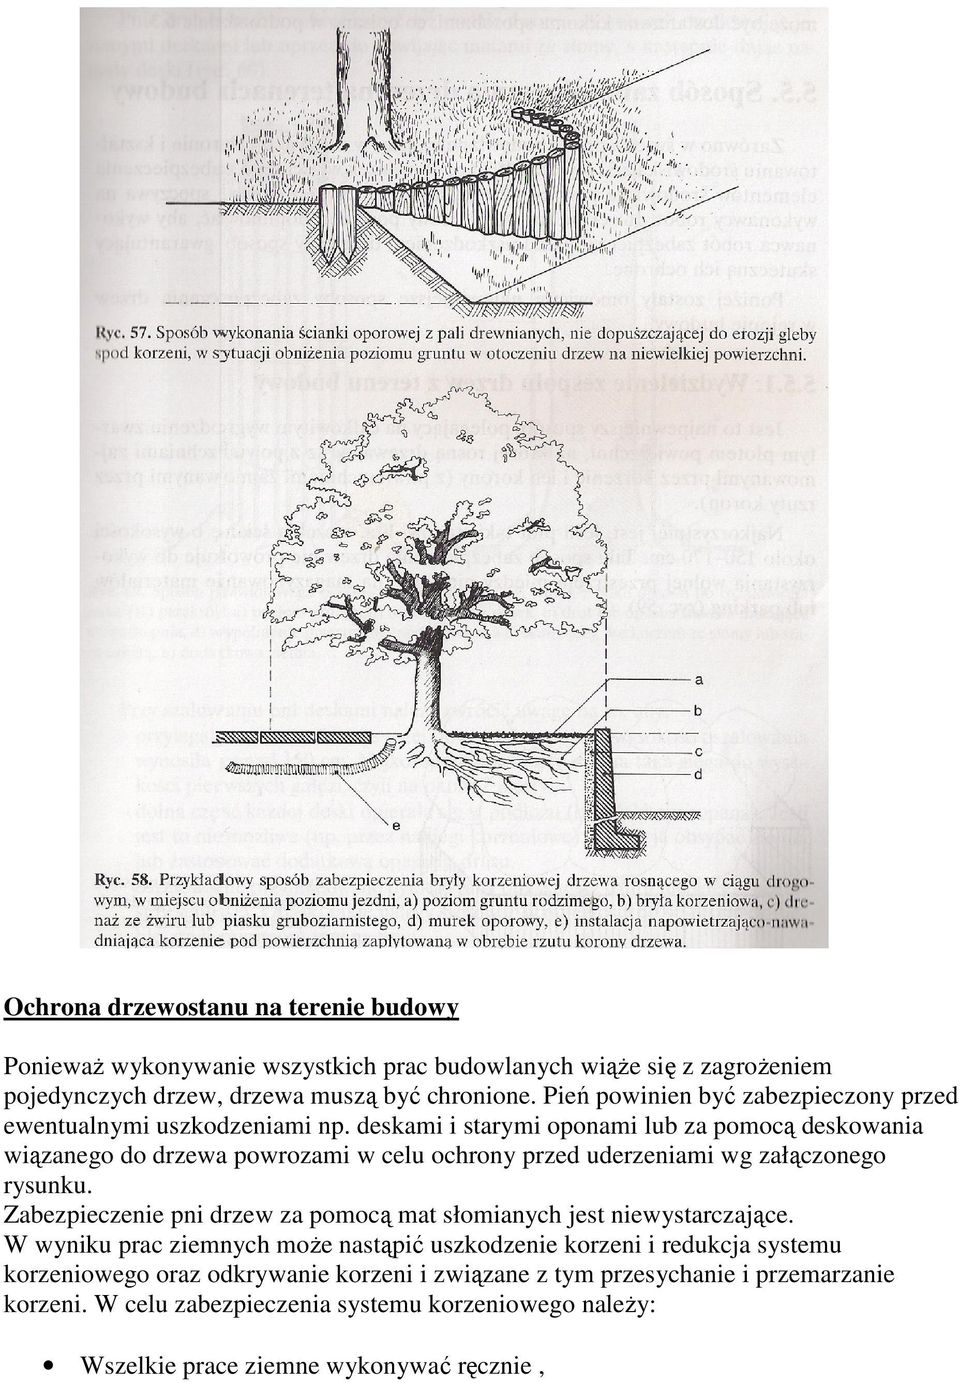 deskami i starymi oponami lub za pomocą deskowania wiązanego do drzewa powrozami w celu ochrony przed uderzeniami wg załączonego rysunku.